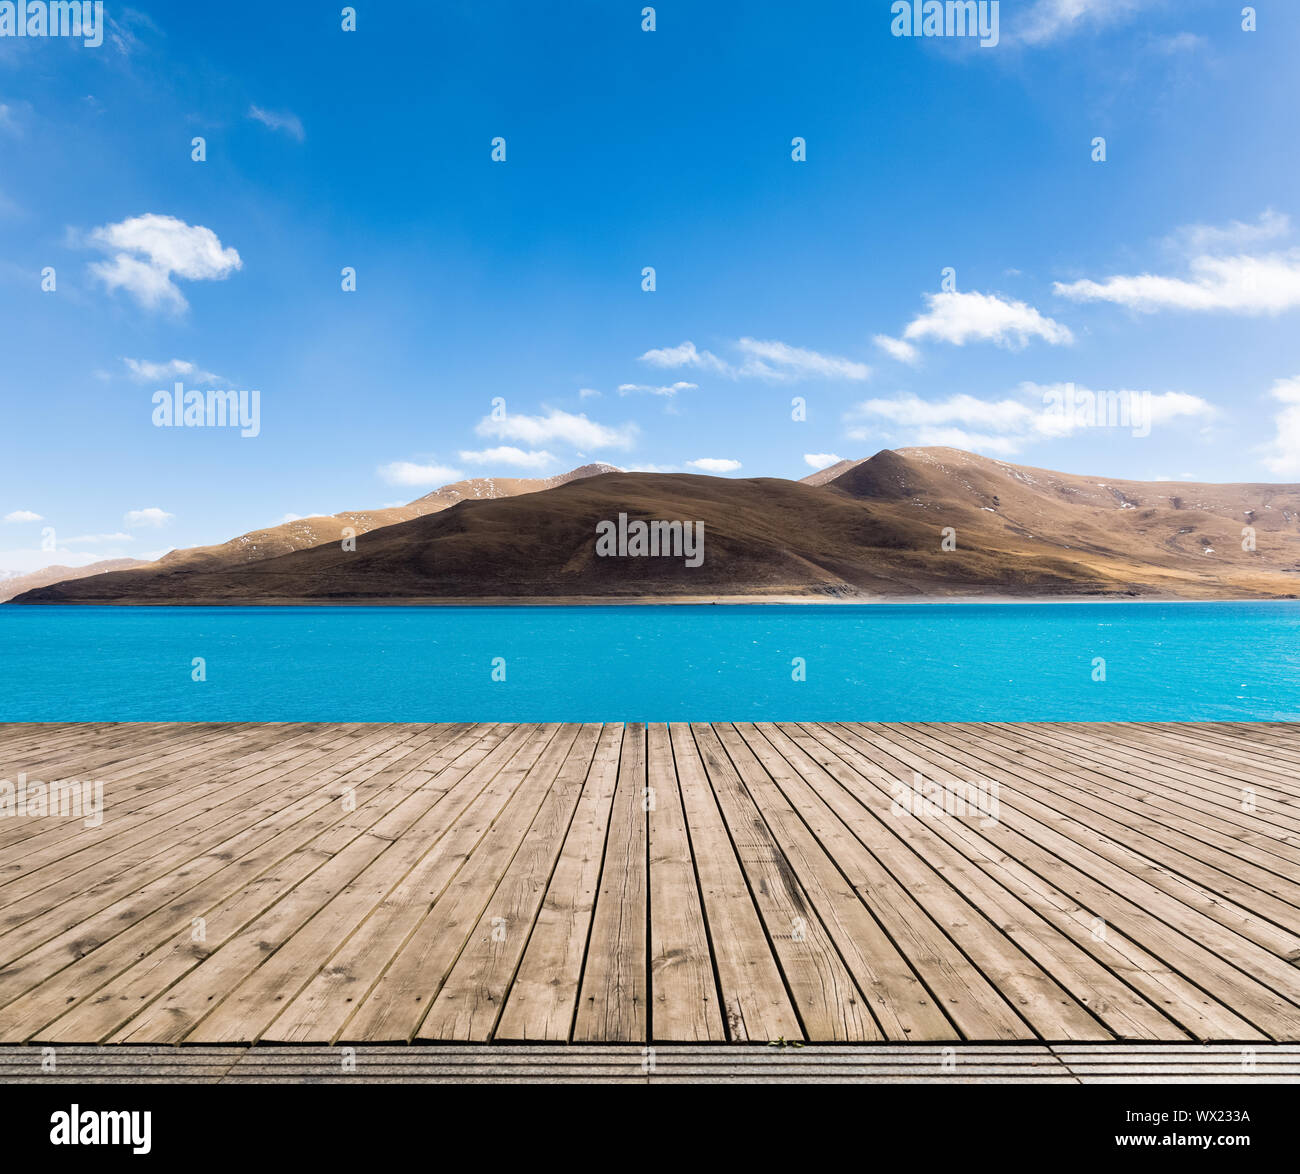 tibet holy lake landscape Stock Photo